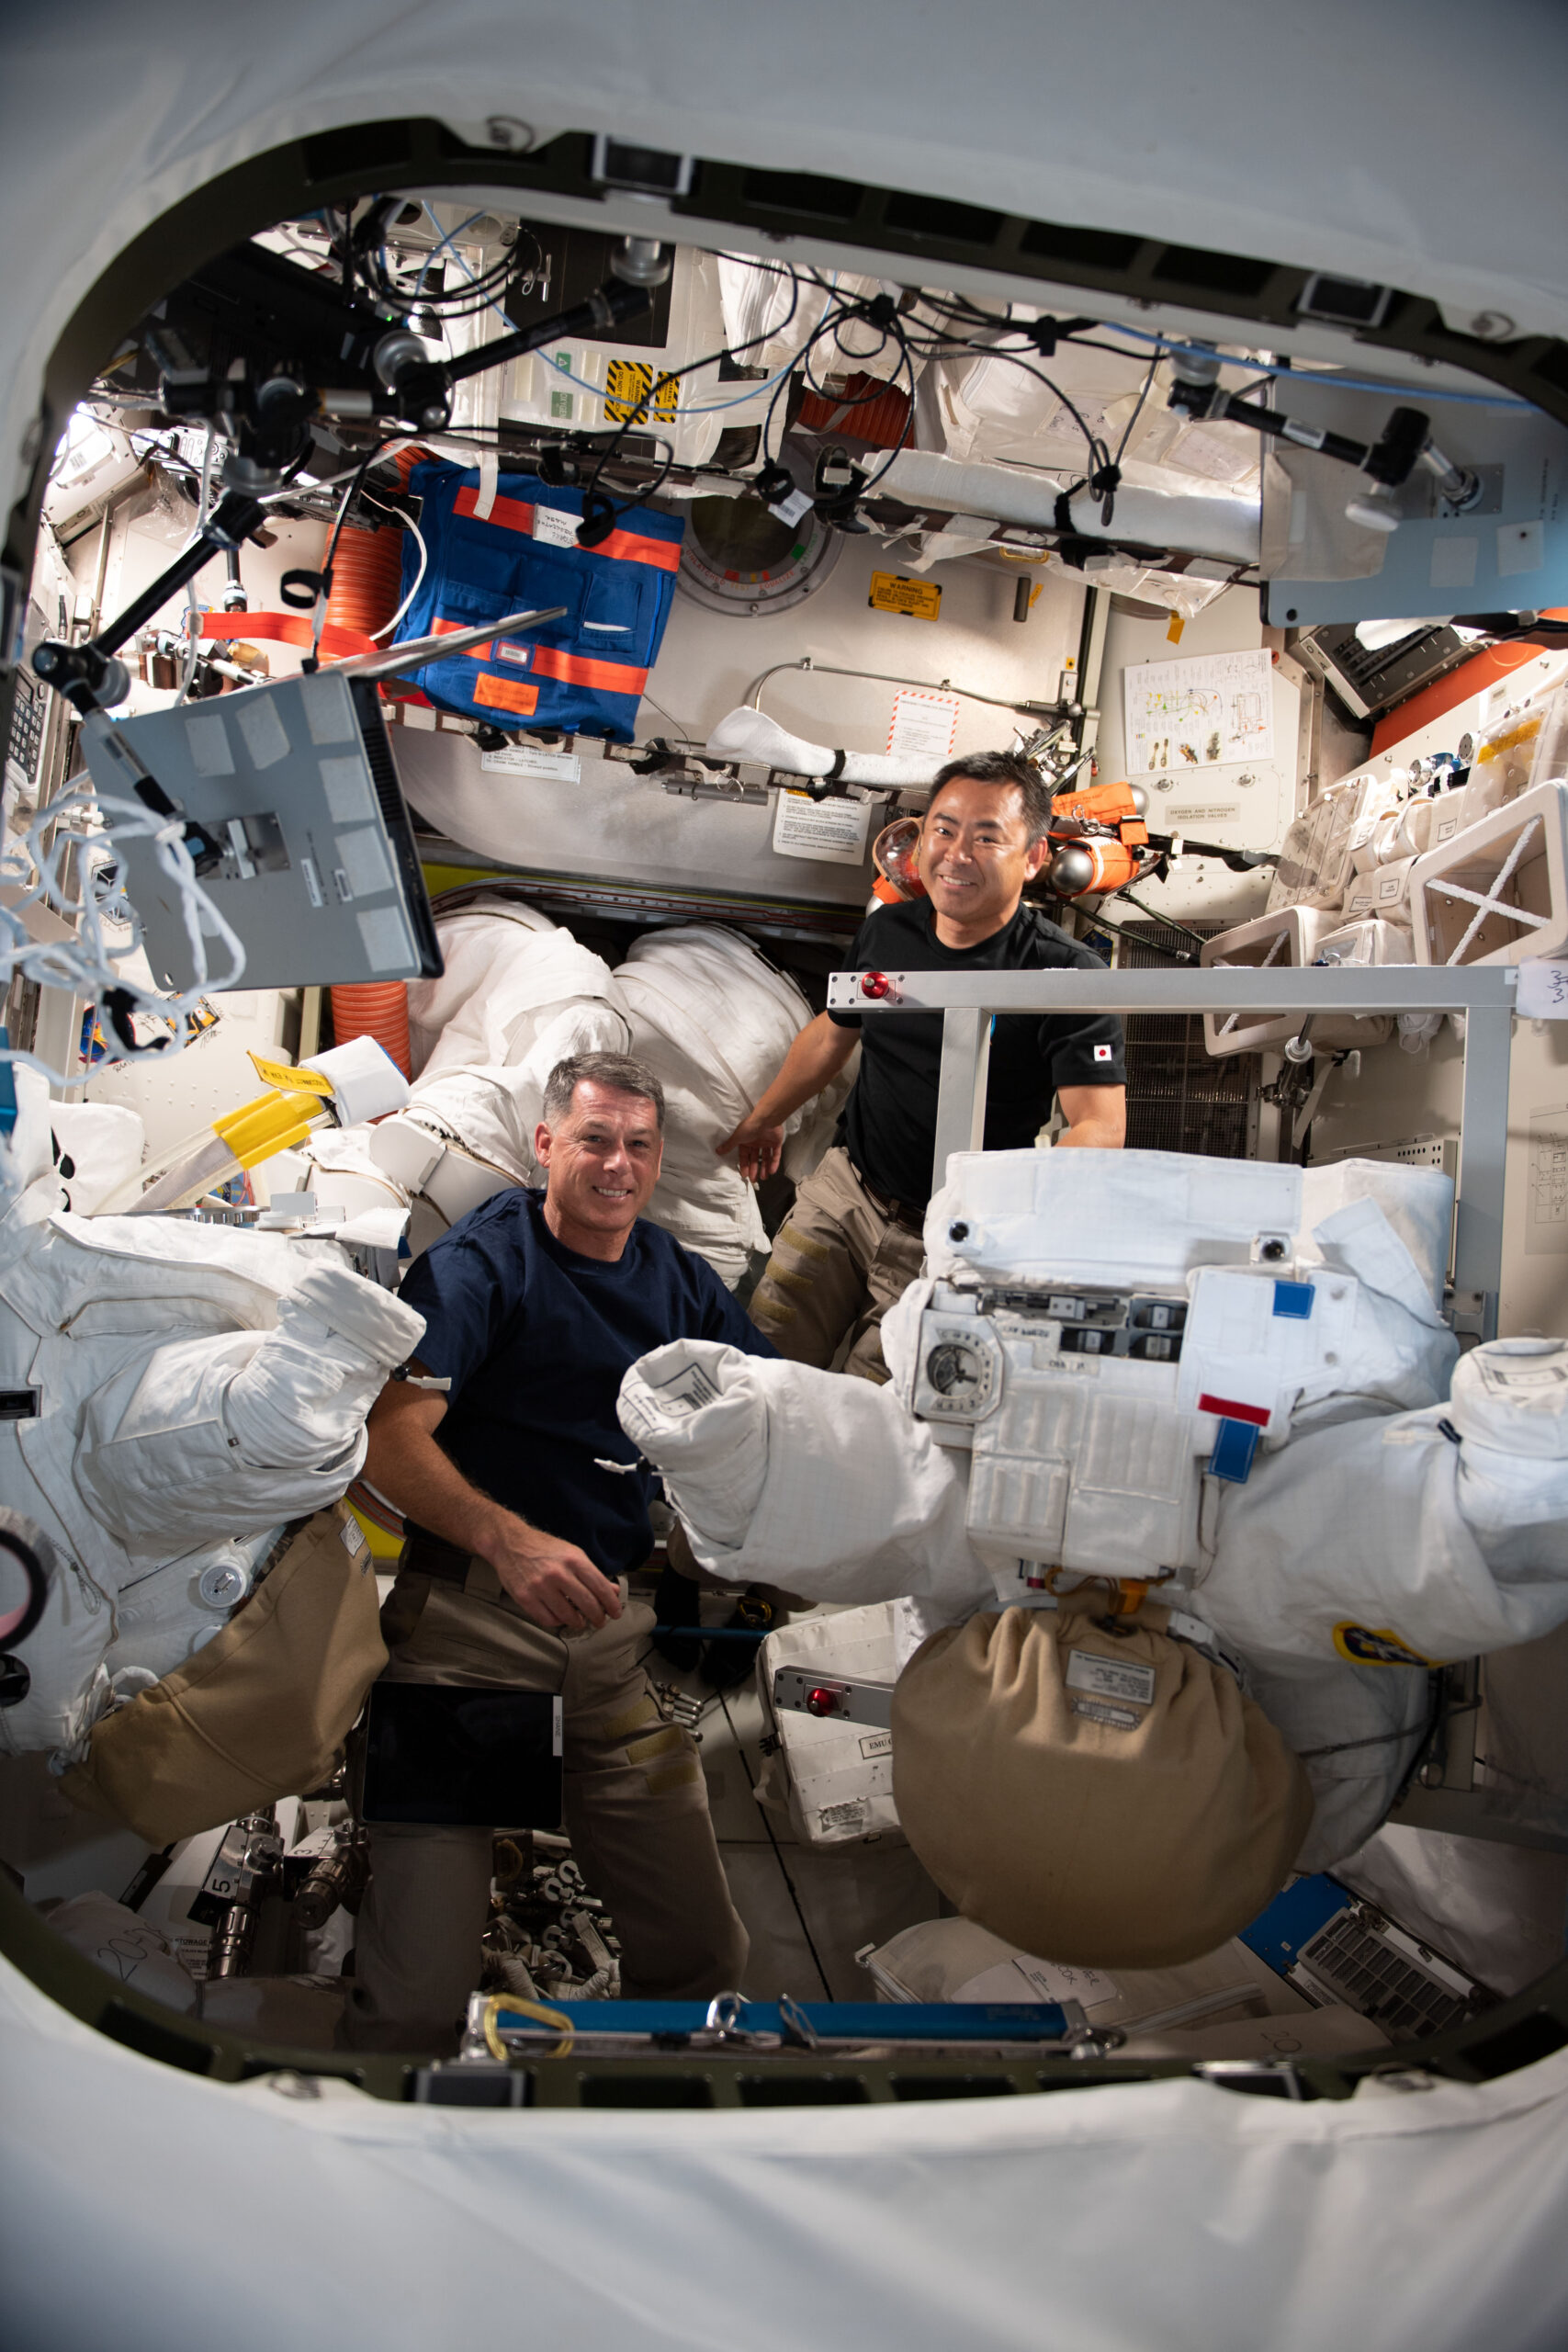 New York Students to Hear from NASA, JAXA Astronauts on Space Station